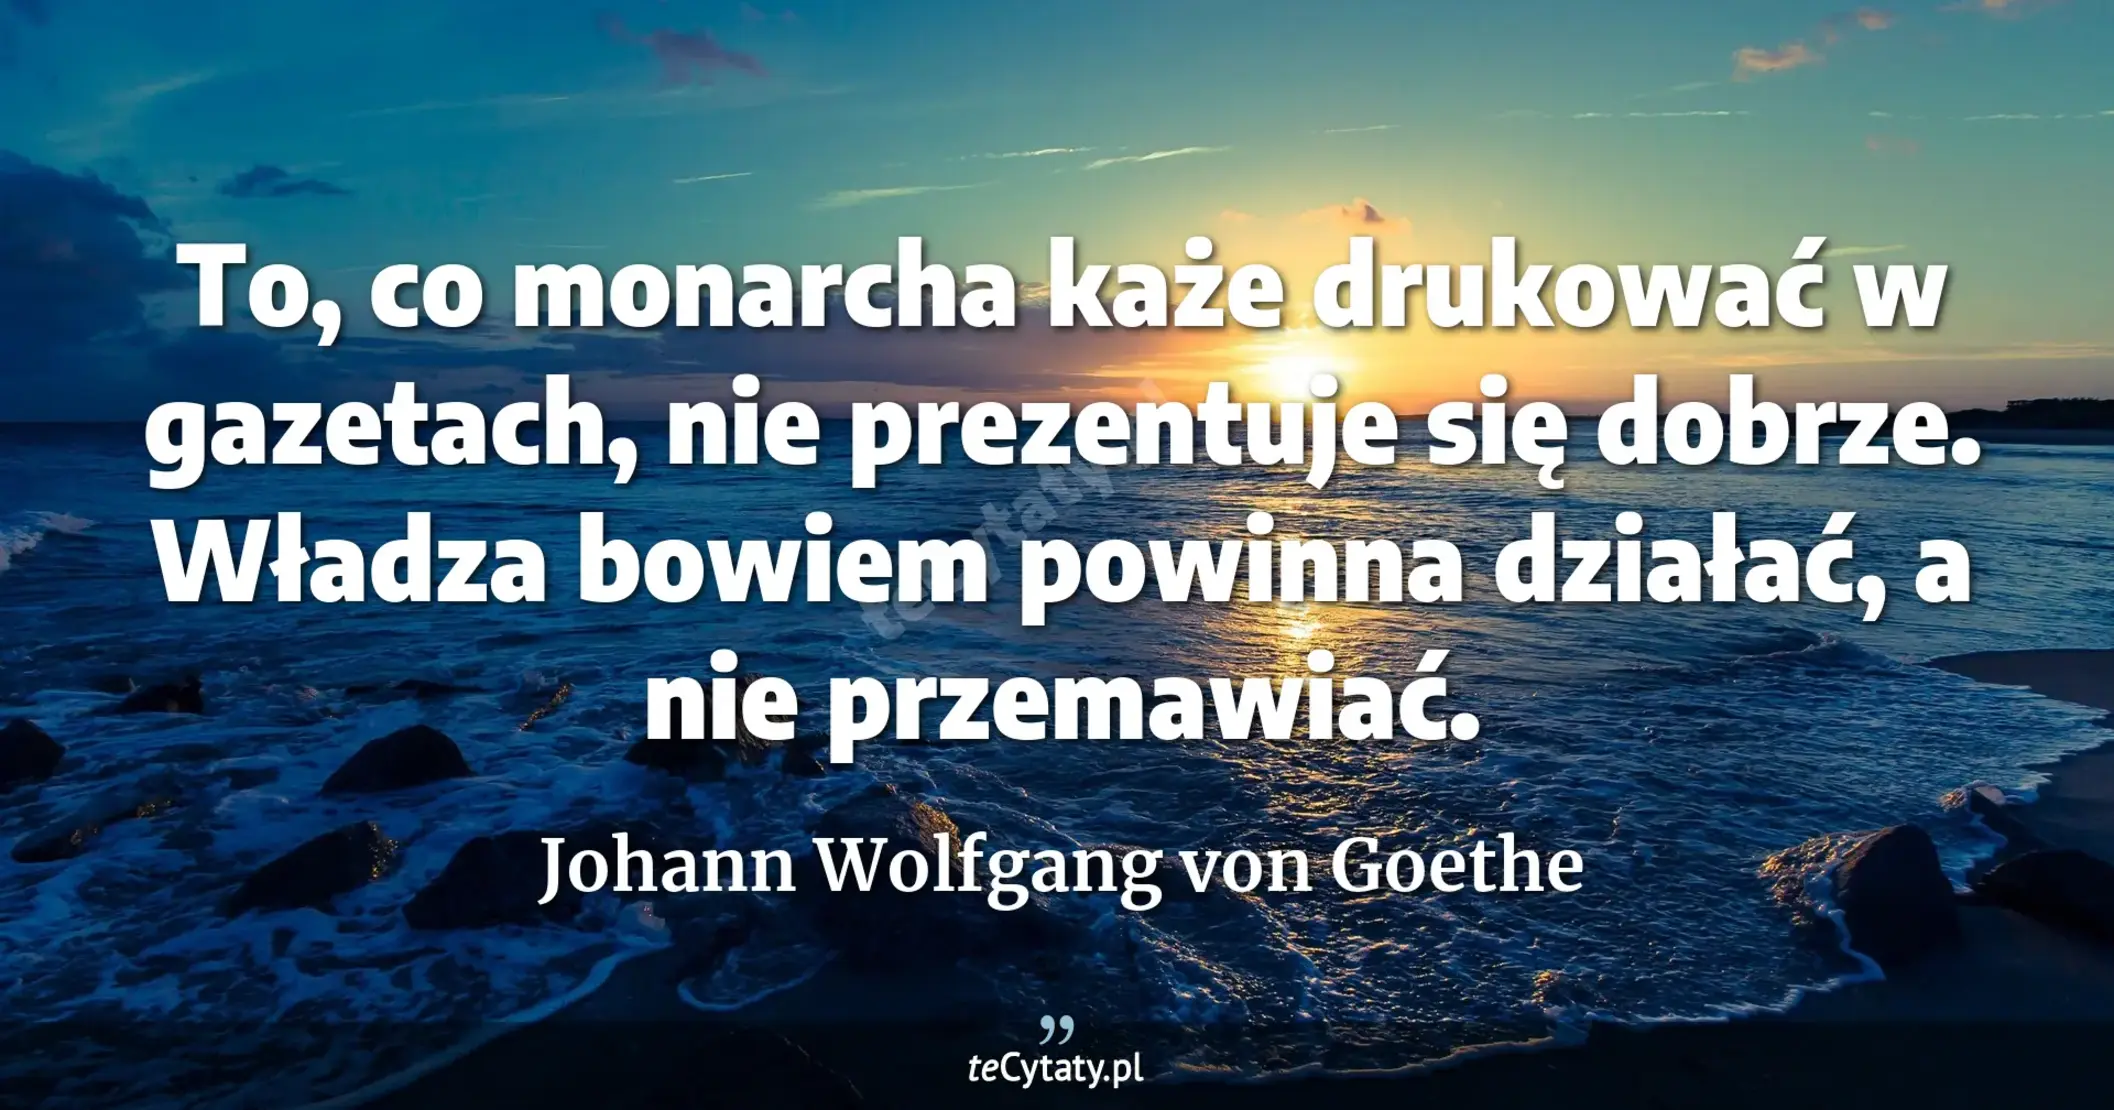 To, co monarcha każe drukować w gazetach, nie prezentuje się dobrze. Władza bowiem powinna działać, a nie przemawiać. - Johann Wolfgang von Goethe